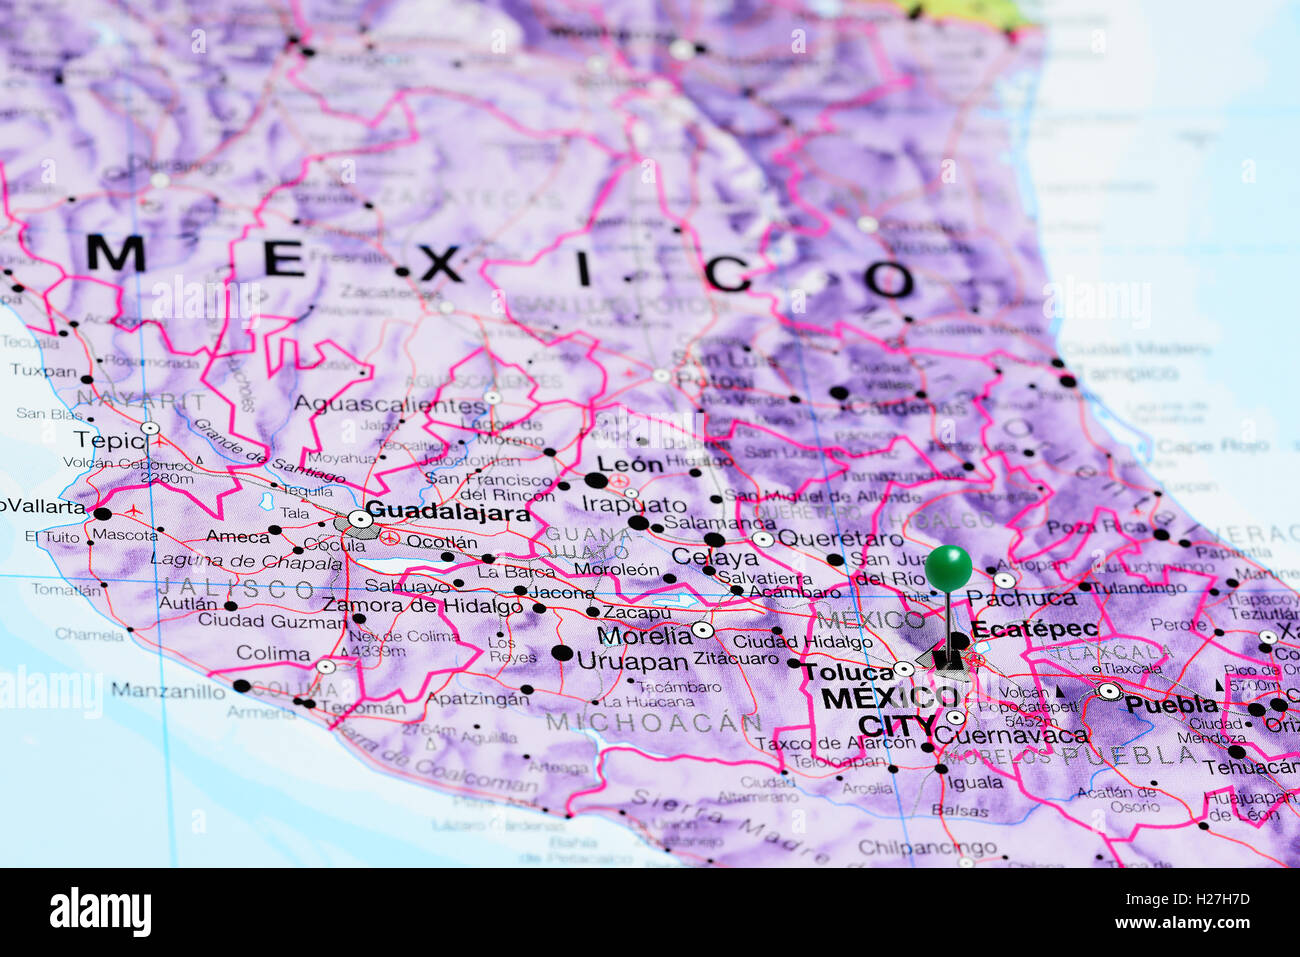 La ville de Mexico sur une carte du Mexique Banque D'Images